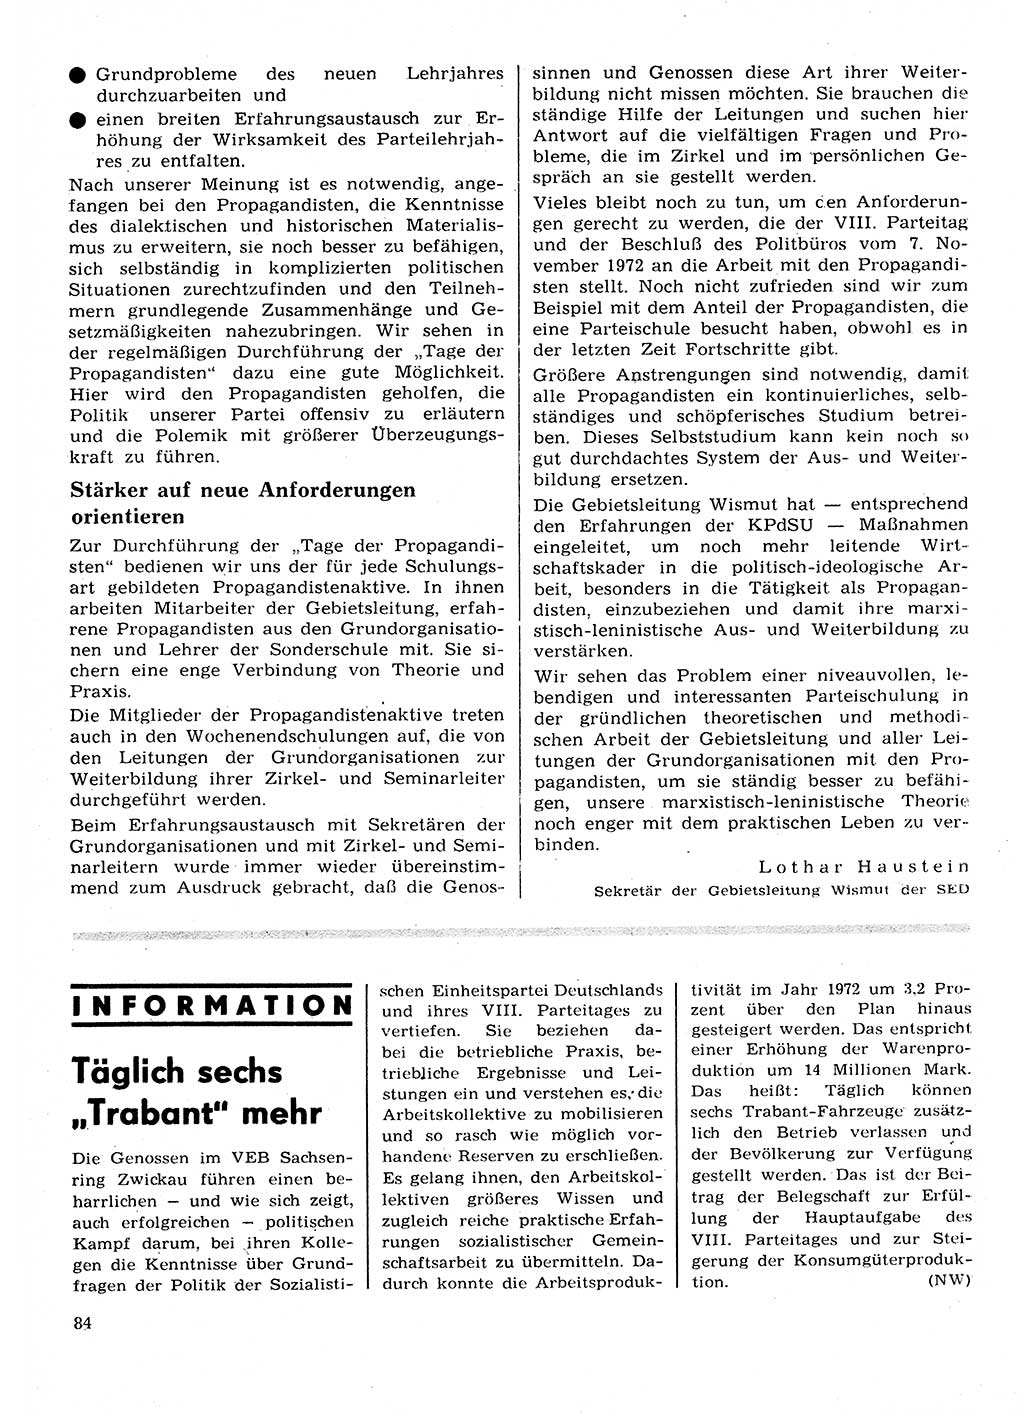 Neuer Weg (NW), Organ des Zentralkomitees (ZK) der SED (Sozialistische Einheitspartei Deutschlands) für Fragen des Parteilebens, 28. Jahrgang [Deutsche Demokratische Republik (DDR)] 1973, Seite 84 (NW ZK SED DDR 1973, S. 84)